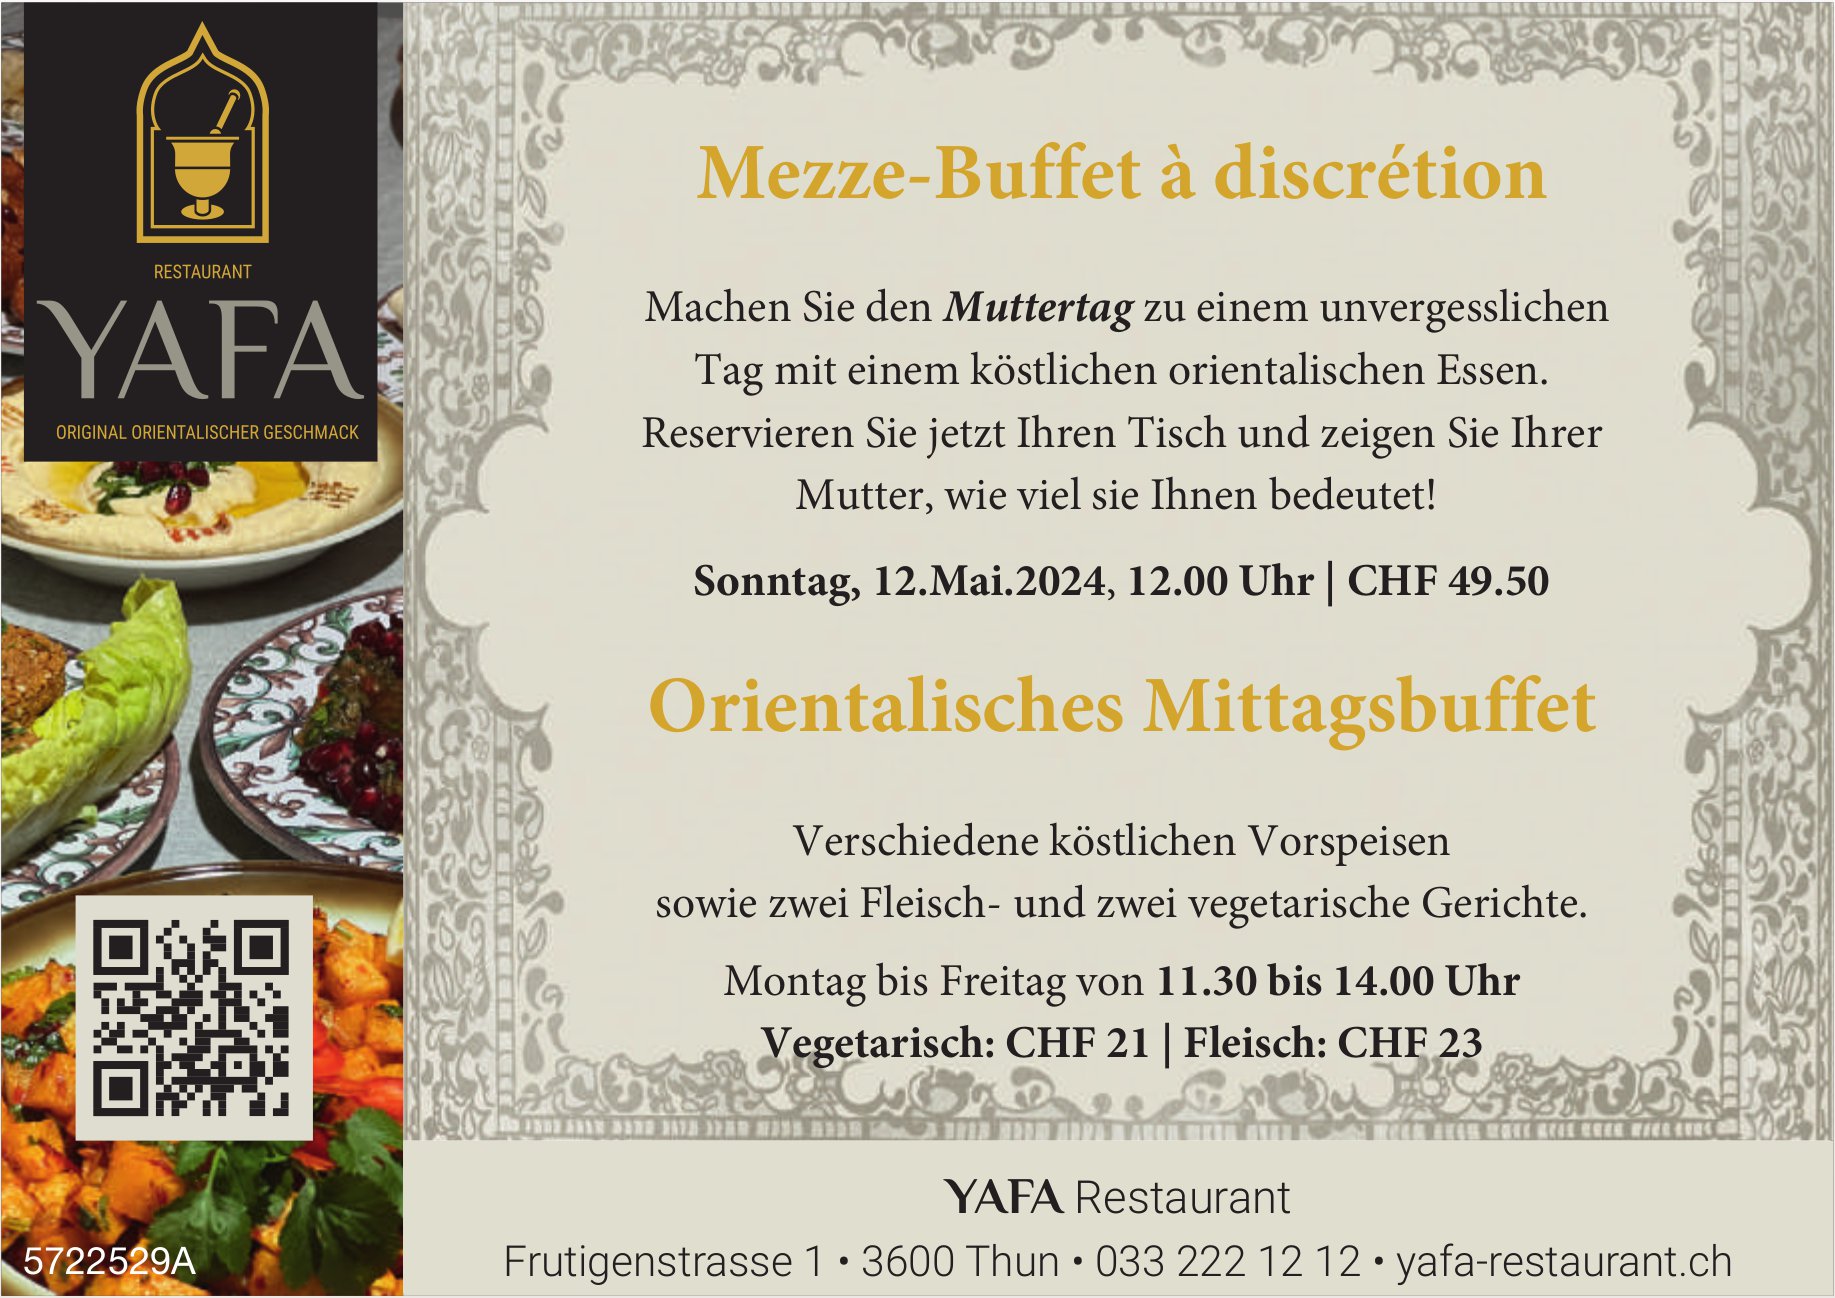 Muttertag: Mezze-Buffet à discrétion, 12. Mai, YAFA Restaurant, Thun